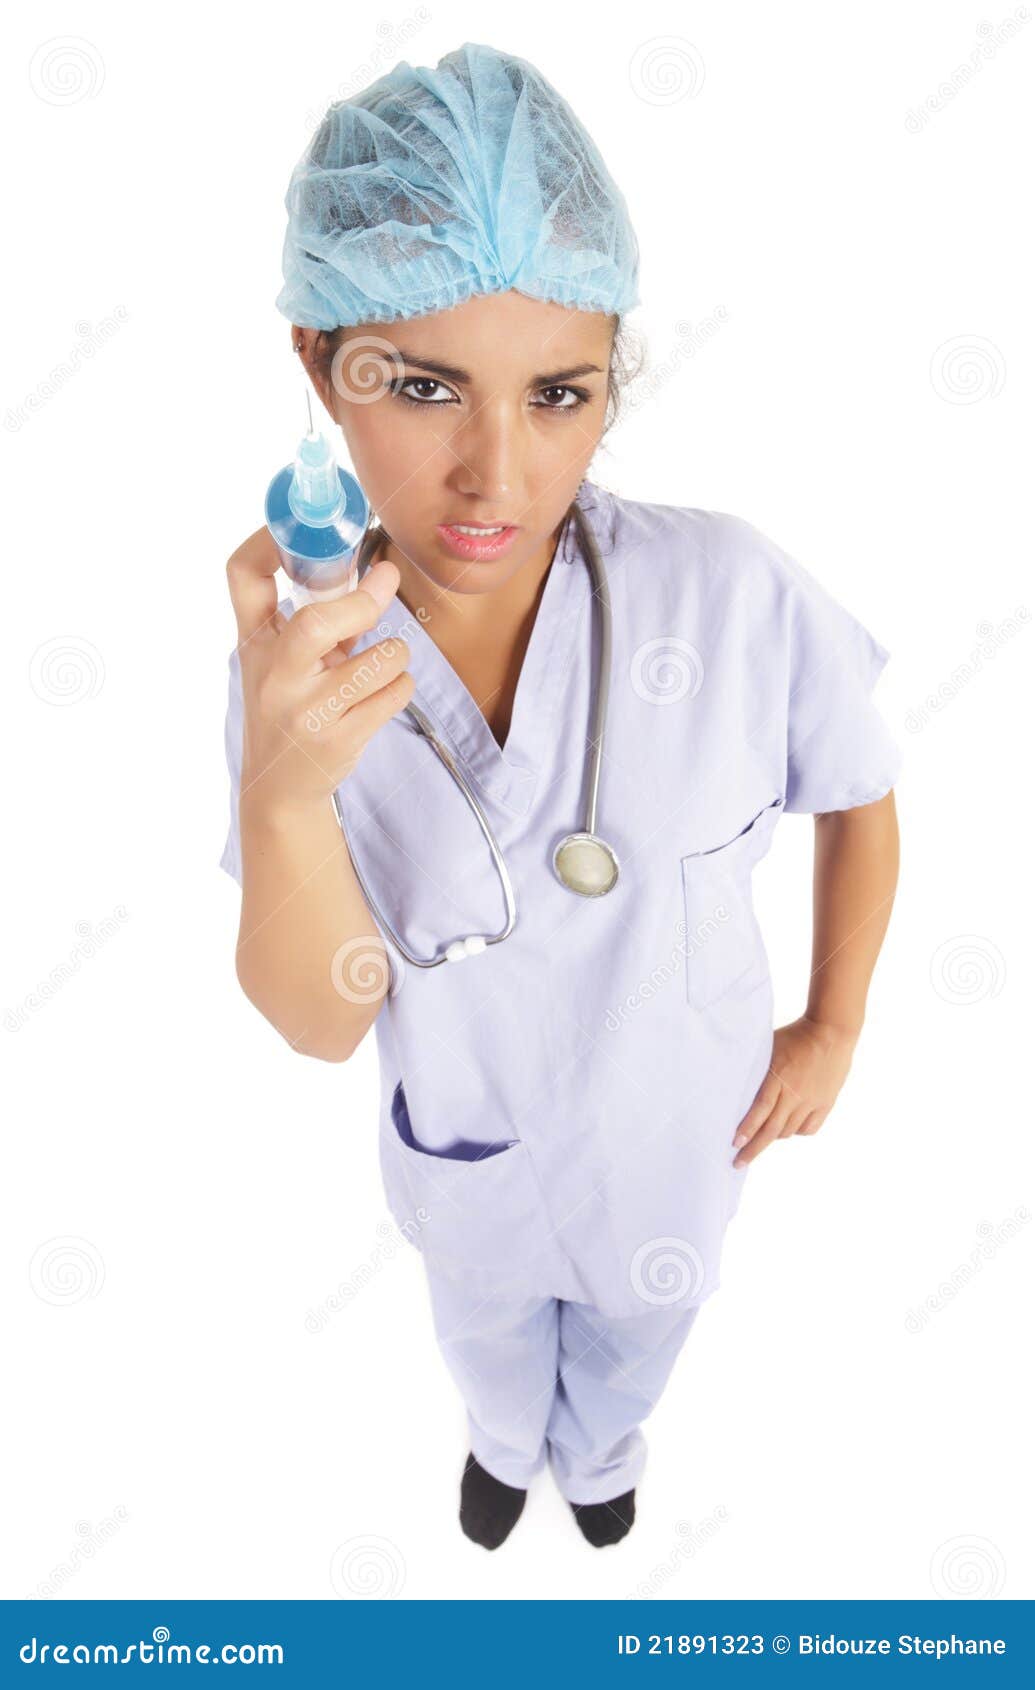 Enfermera Con La Jeringuilla Grande Foto de archivo - Imagen de inyecte,  dosis: 21554720